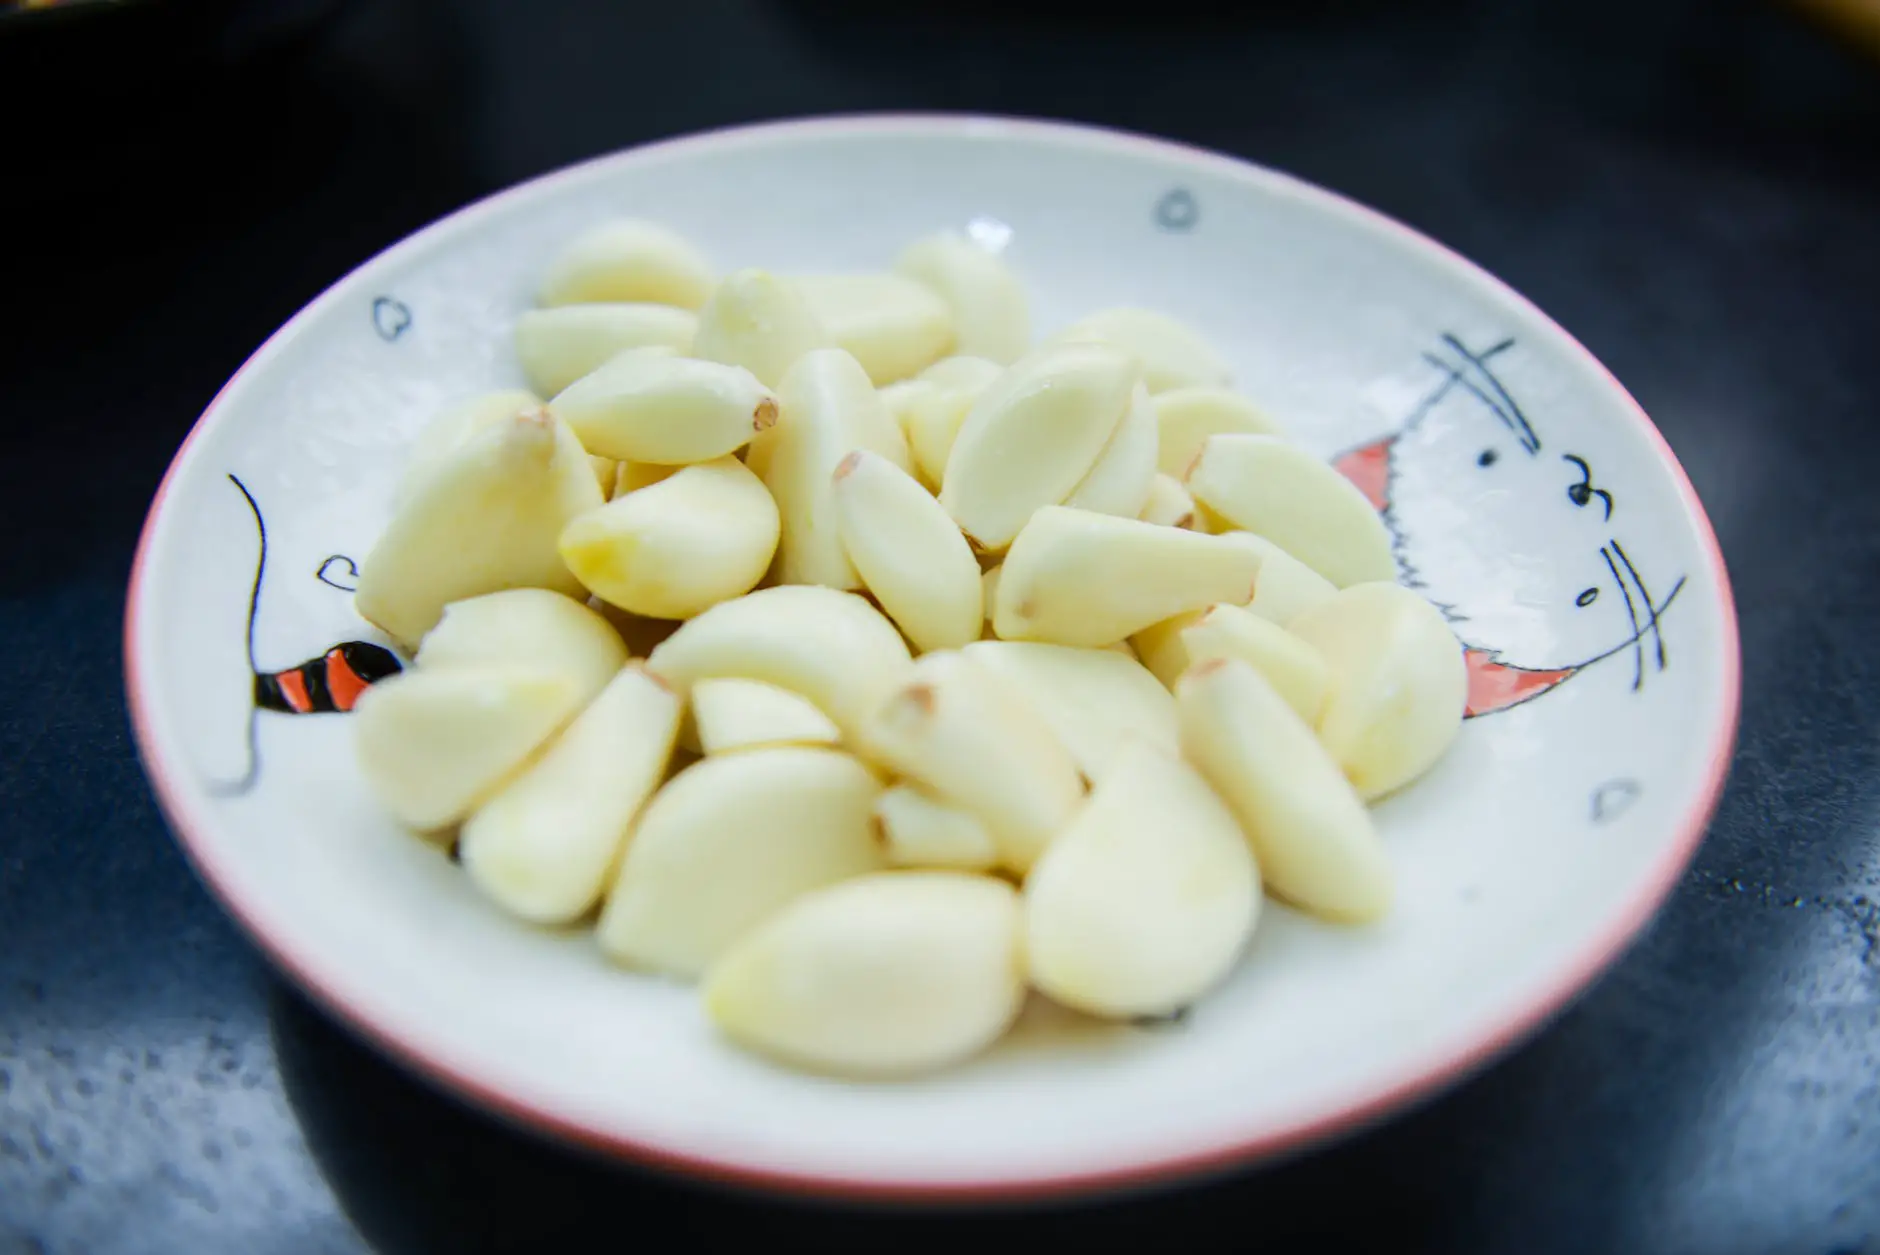 garlic in white ceramic plate